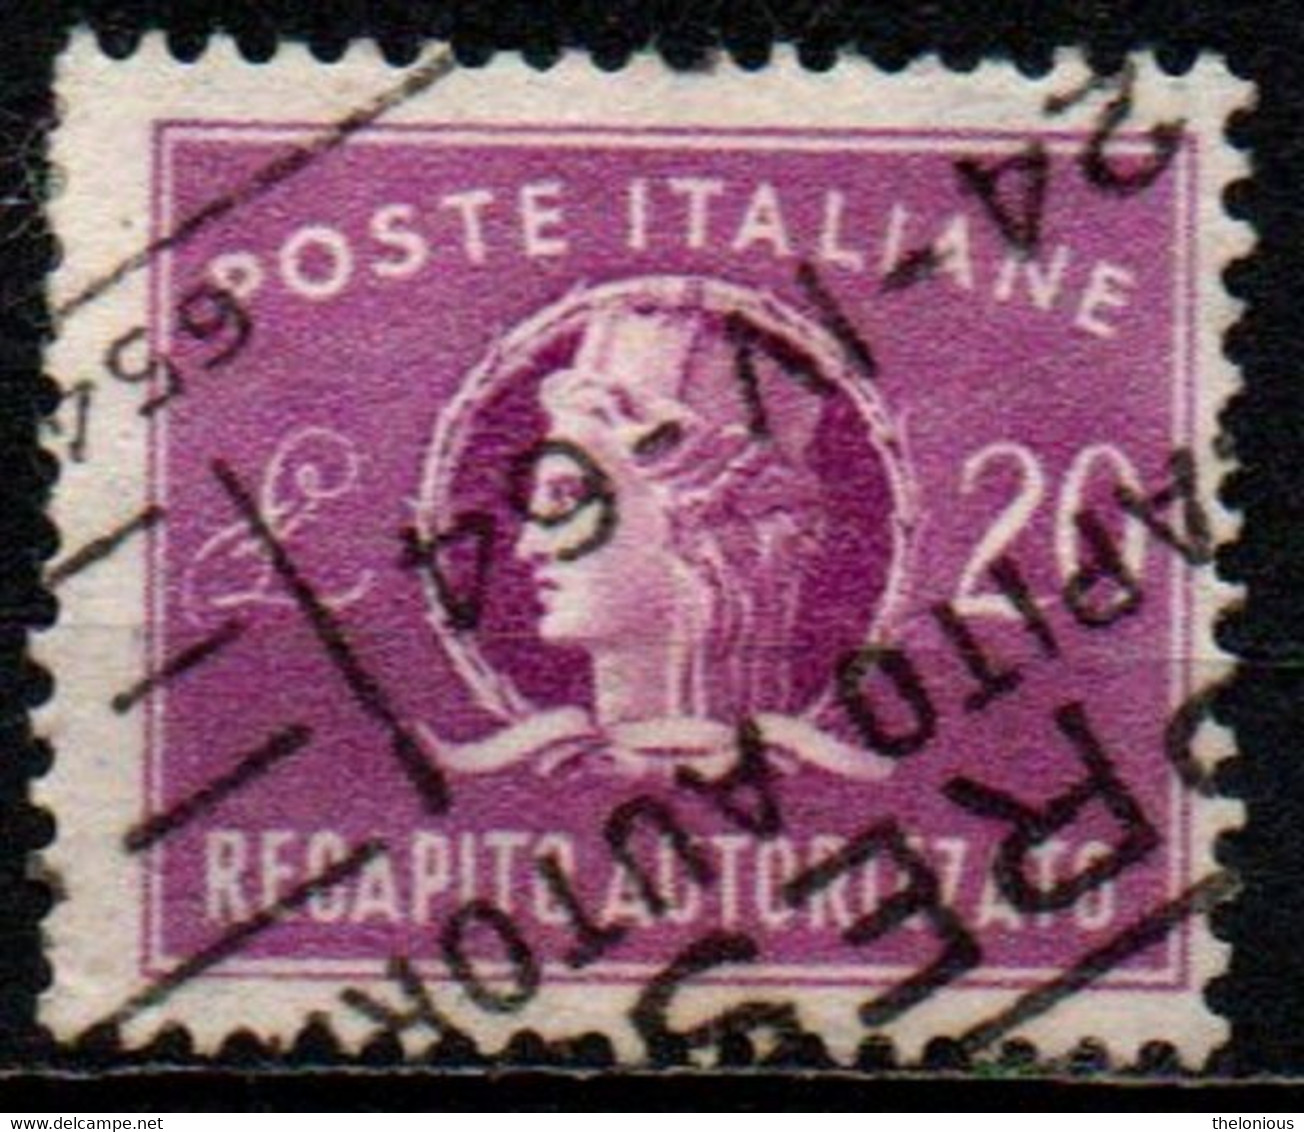 # 1955 Italia Repubblica Recapito Autorizzato Da Lire 20 Usato Filigrana Stelle - Impuestos